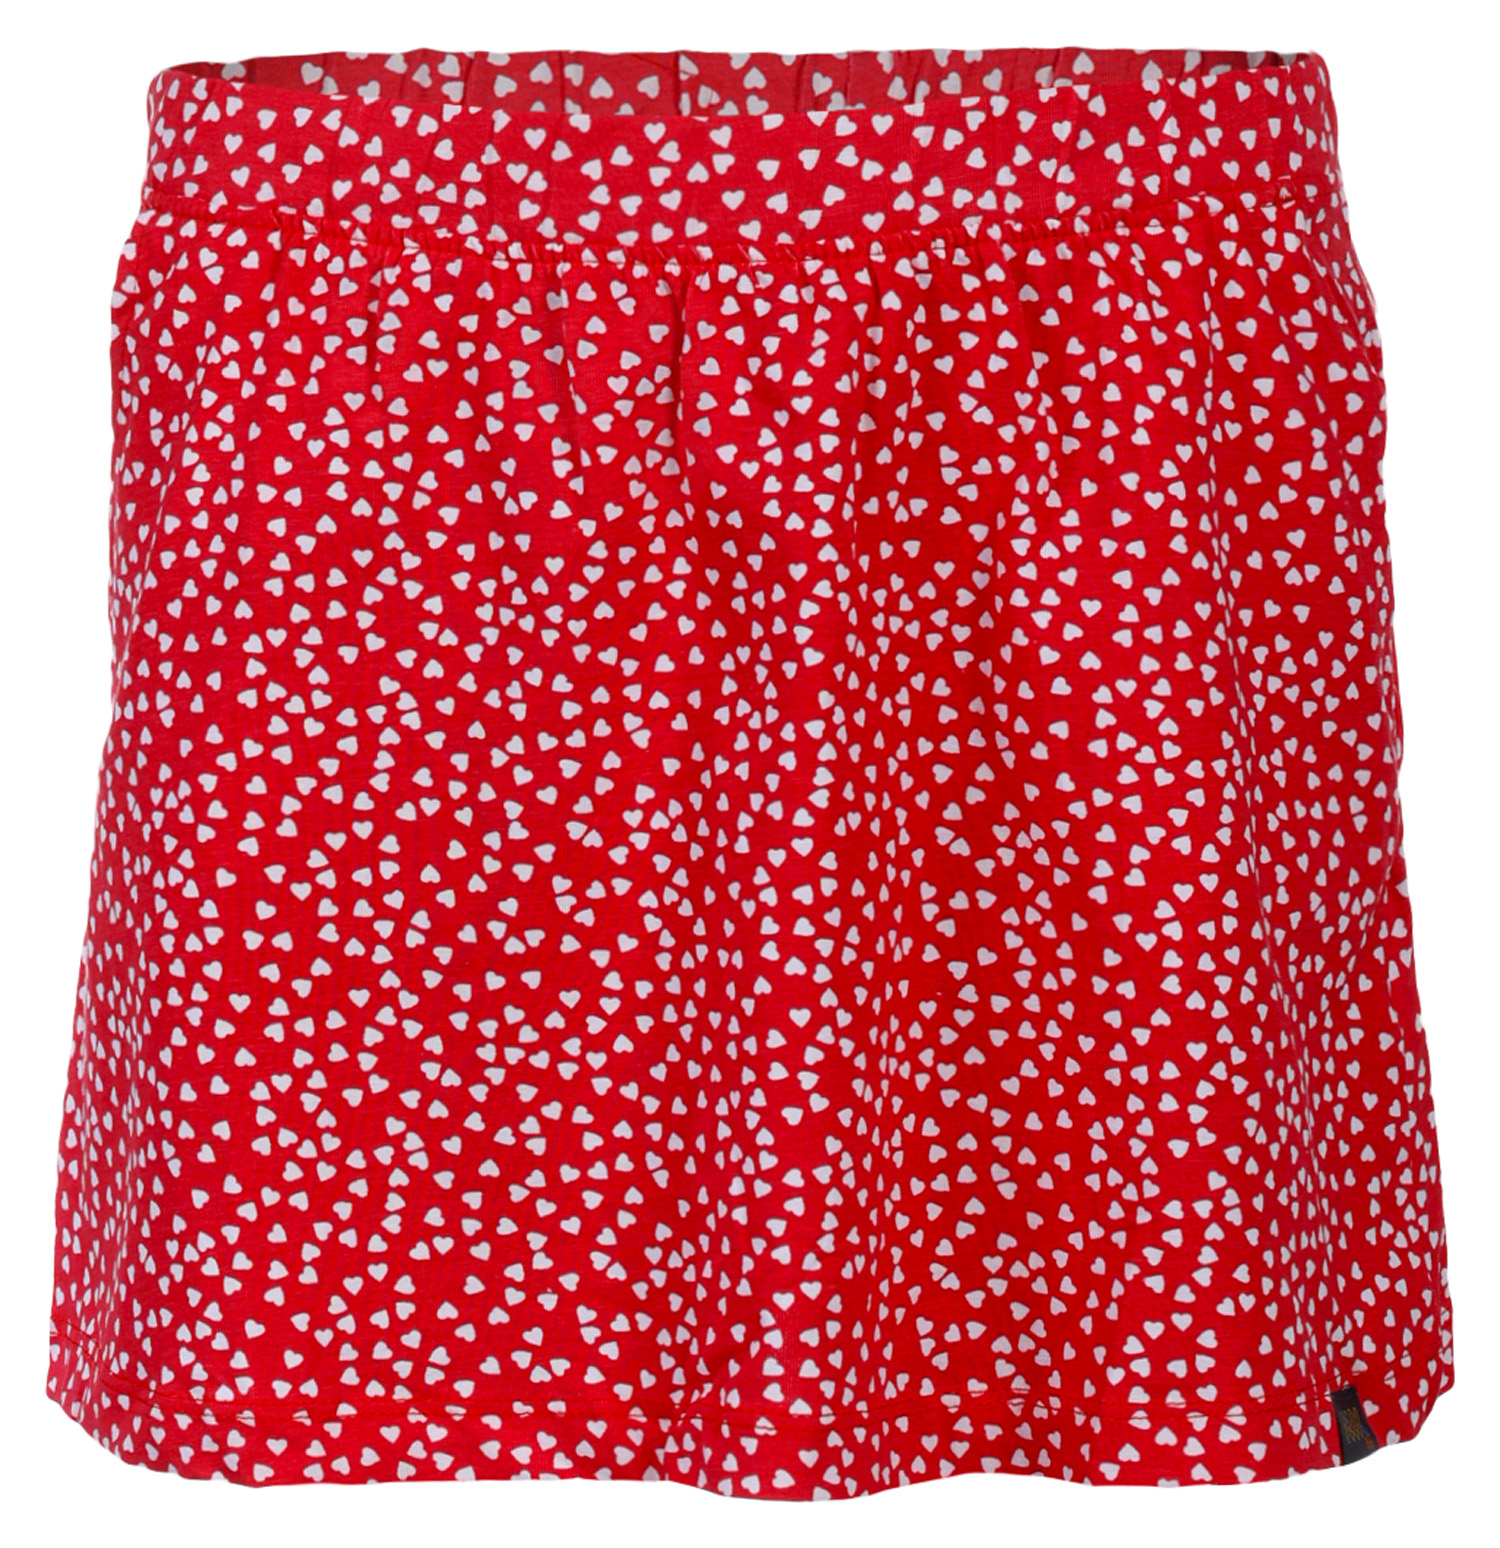 Children's skirt nax NAX MOLINO teaberry variant pa